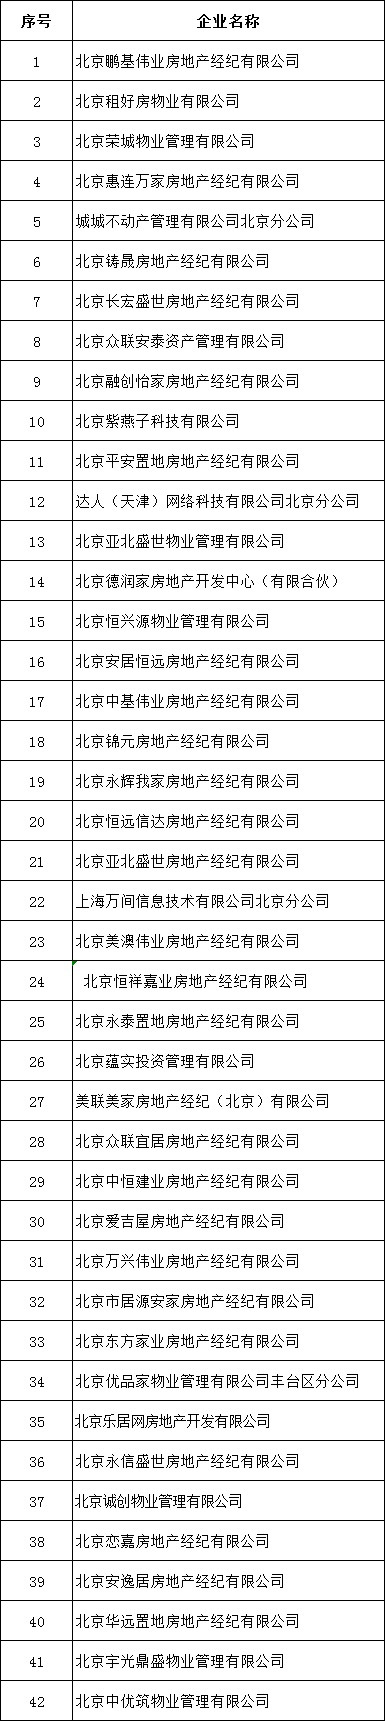 北京发布第二批租赁行业重点关注企业名单 提示消费者谨慎选择